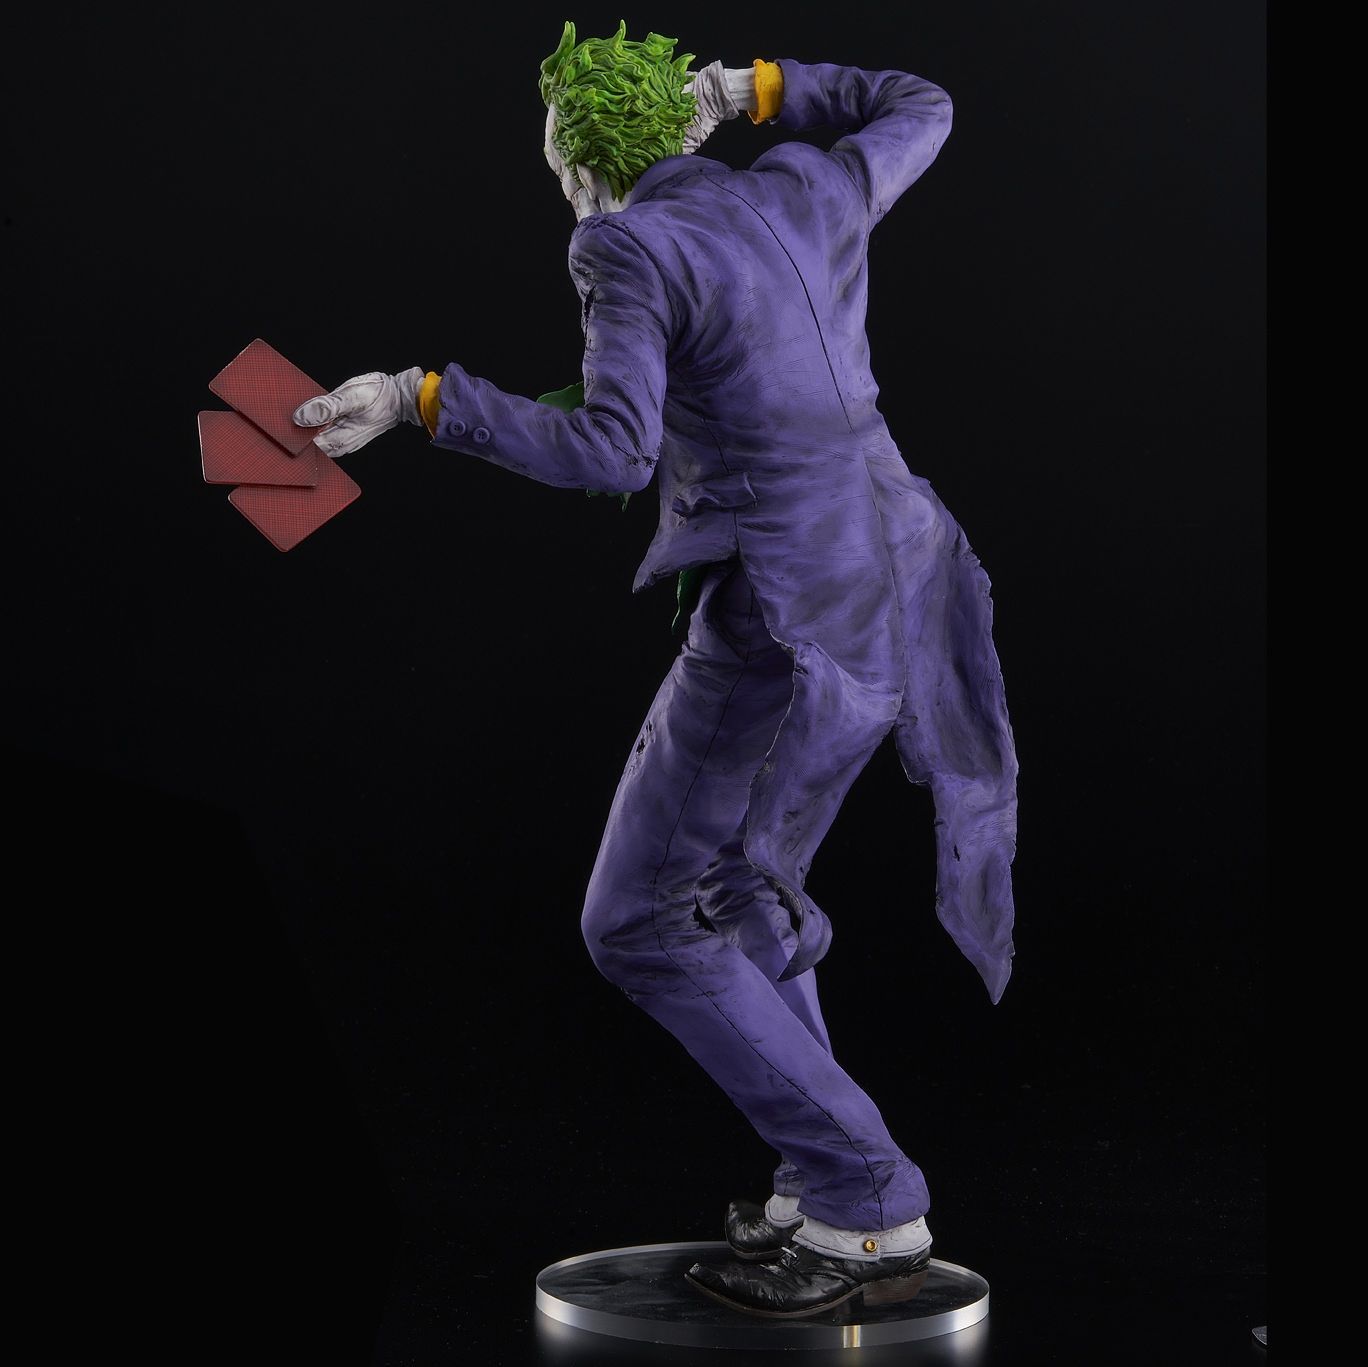 Sentinel - sofbinal (Soft Vinyl) - DC - The Joker (Laughing Purple Ver.) - Marvelous Toys